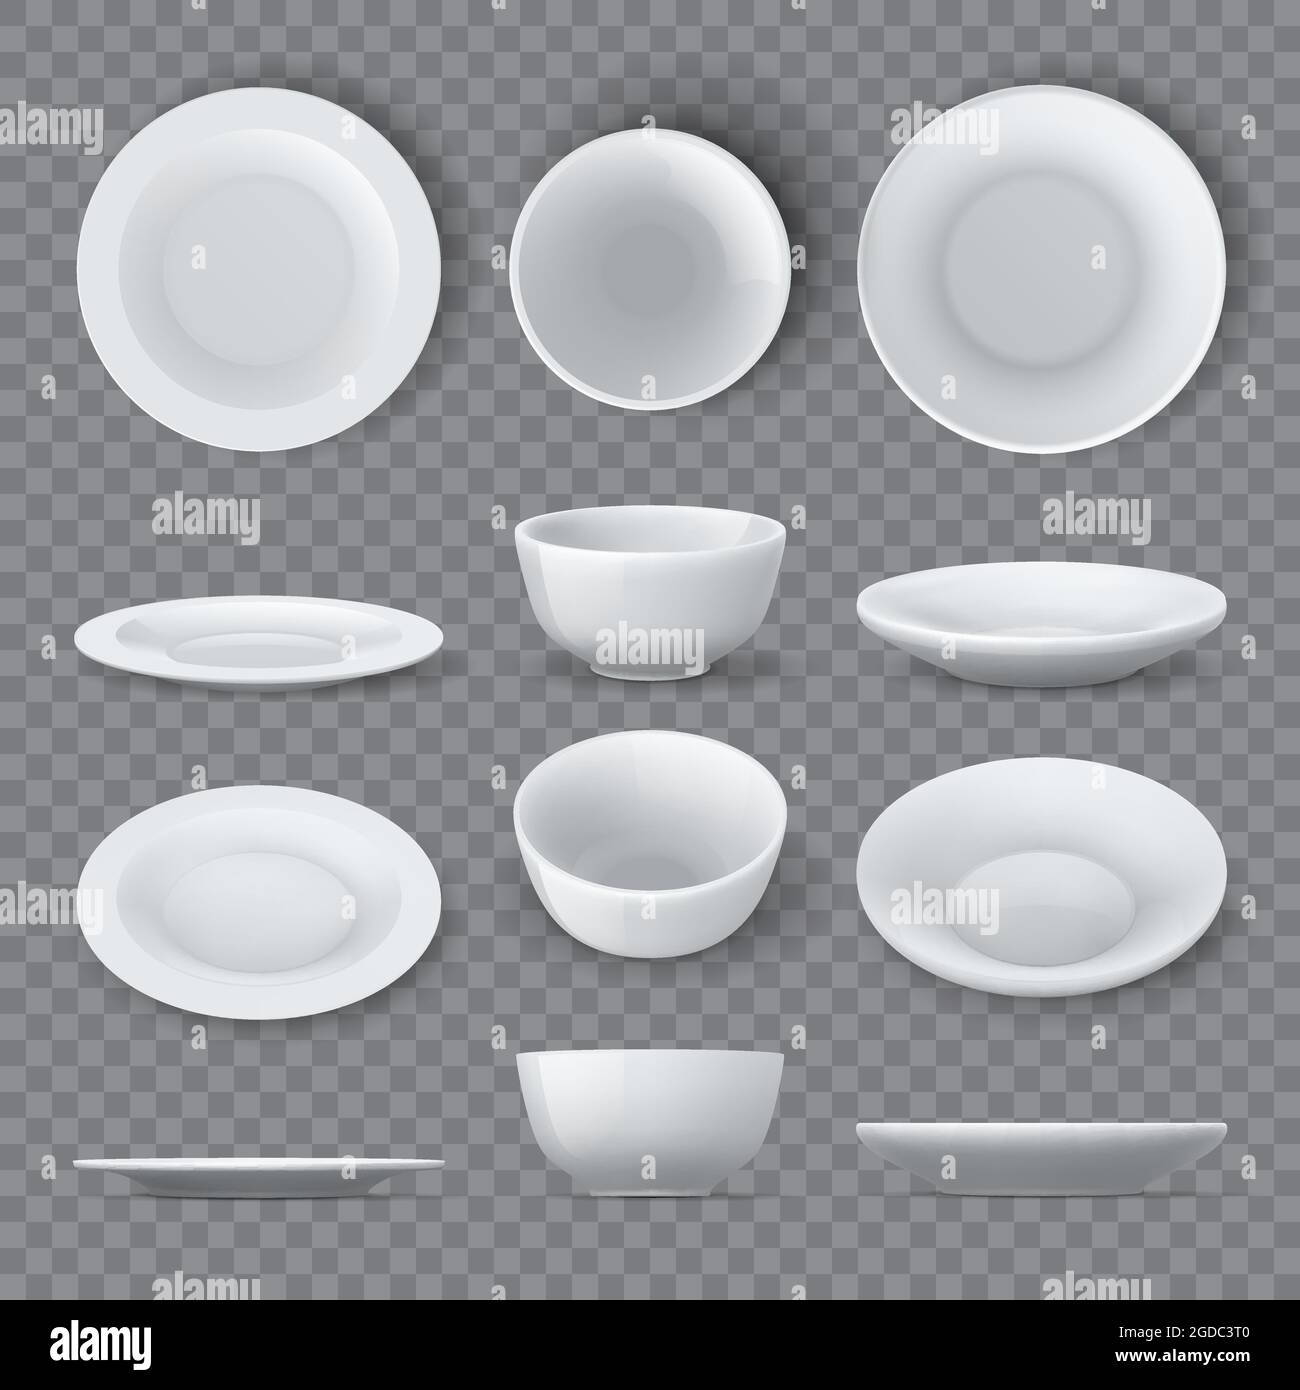 Los platos de la cena se embolsan. Platos de cerámica blanca realistas y  vistas laterales, laterales y de la parte superior del recipiente vacío.  Porcelana vajilla redonda vajilla plato 3D vector conjunto